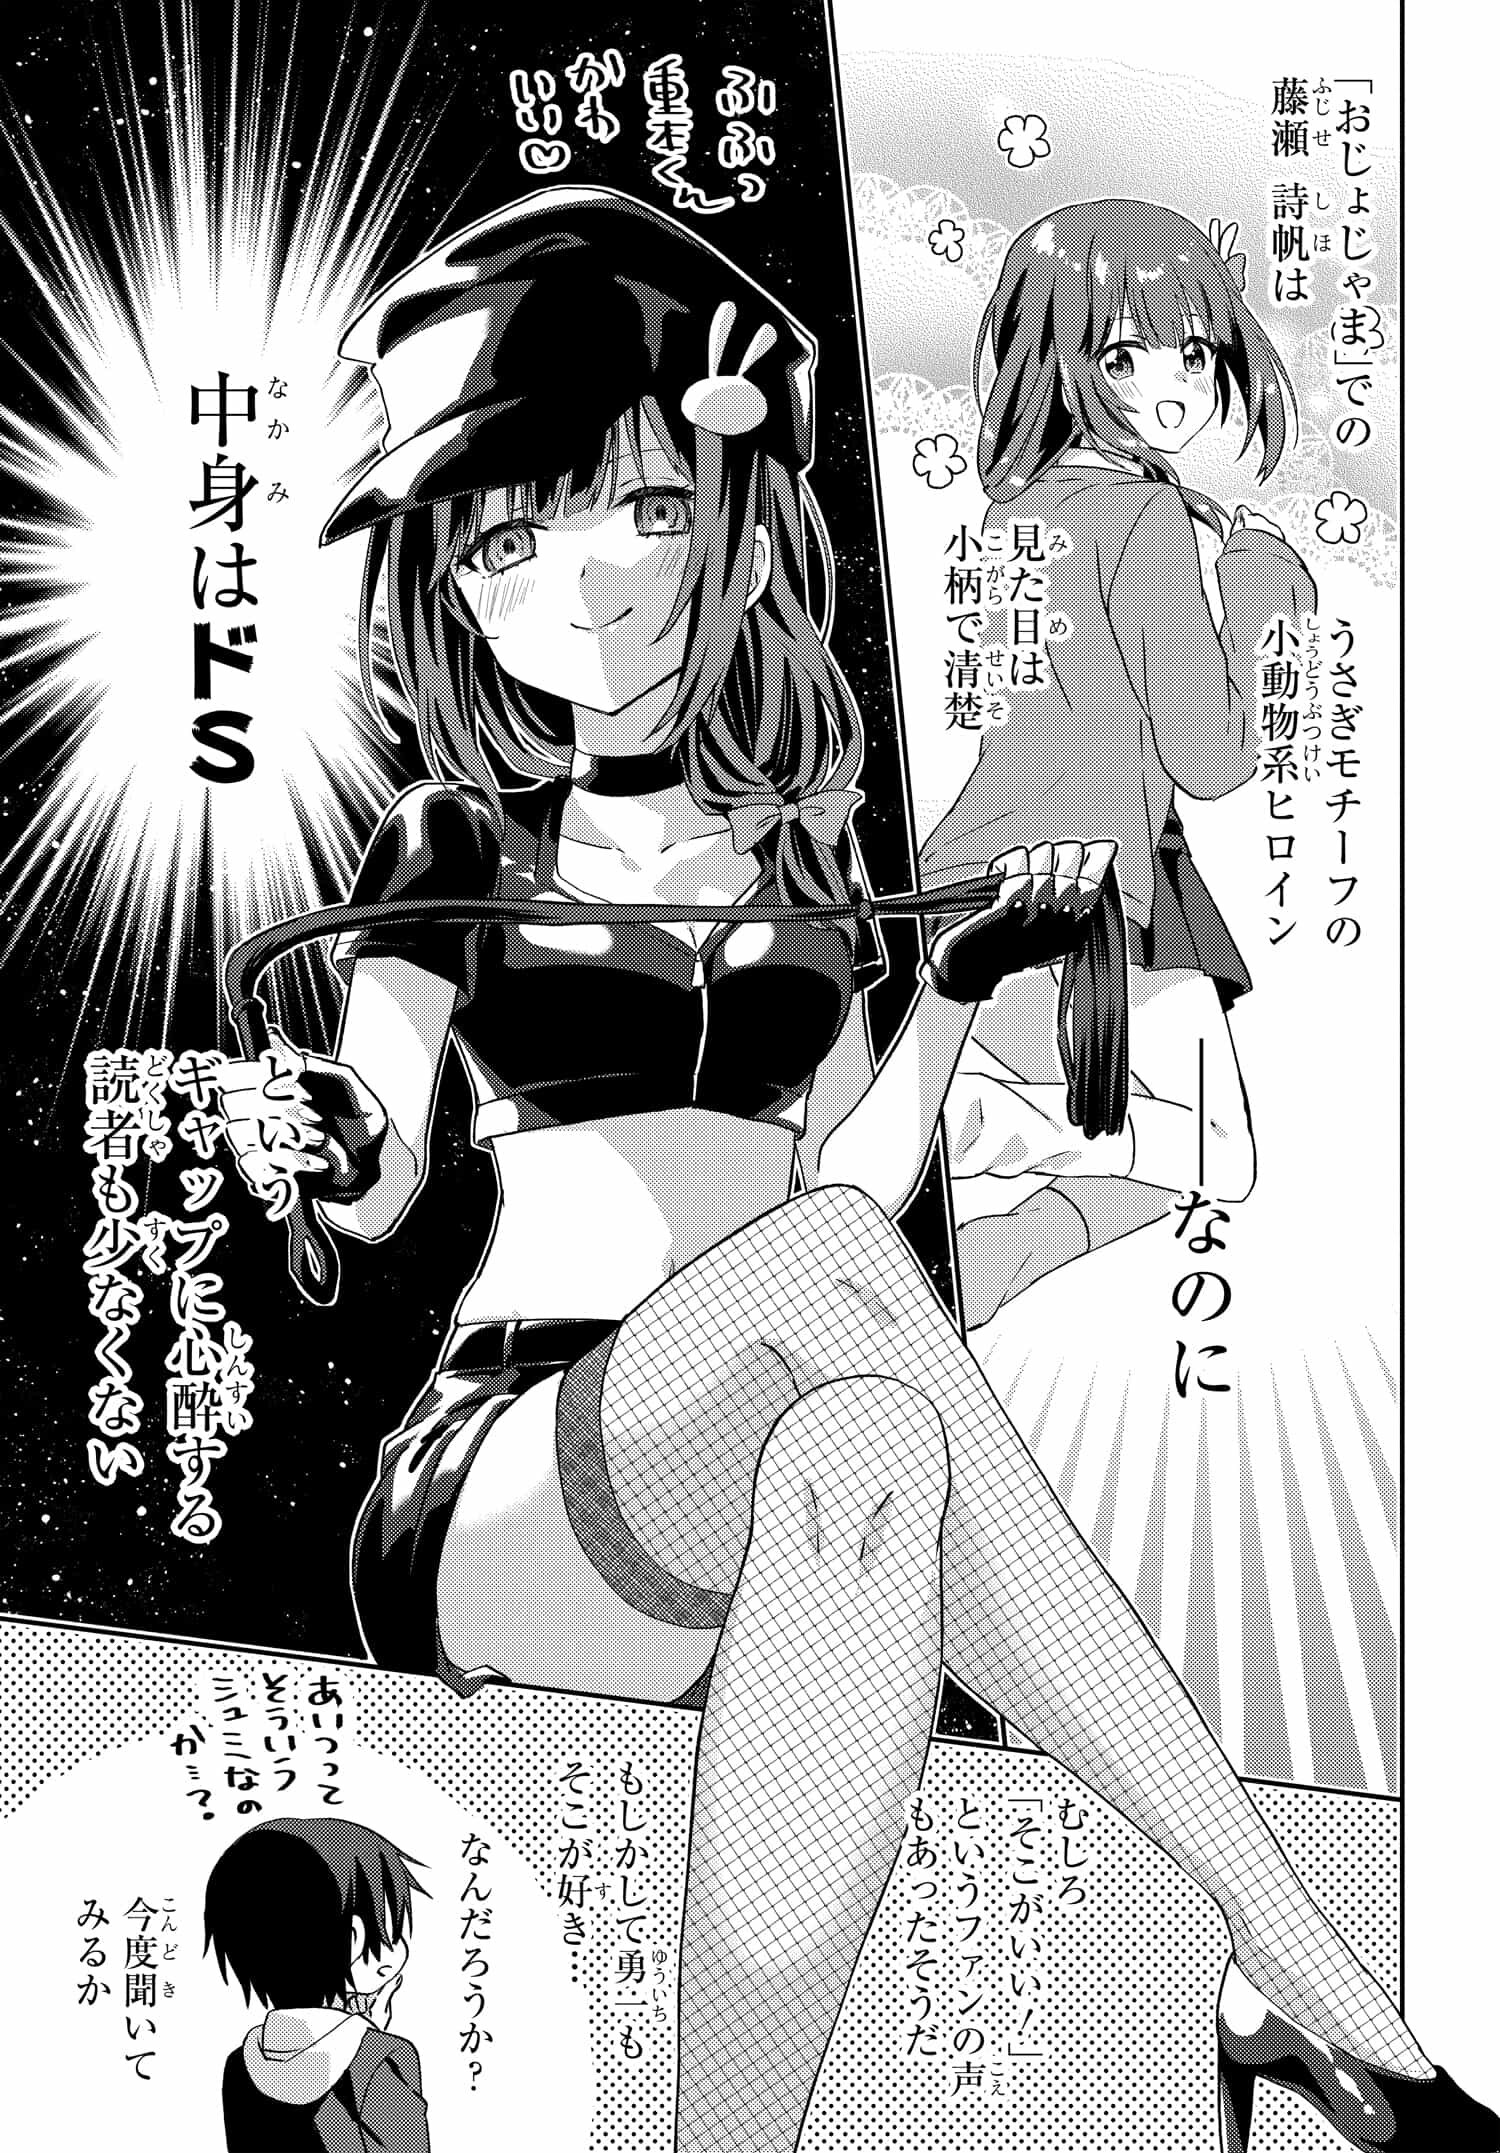 Romcom Manga ni Haitte Shimatta no de, Oshi no Make Heroine wo Zenryoku de Shiawase ni suru - Chapter 7.2 - Page 4